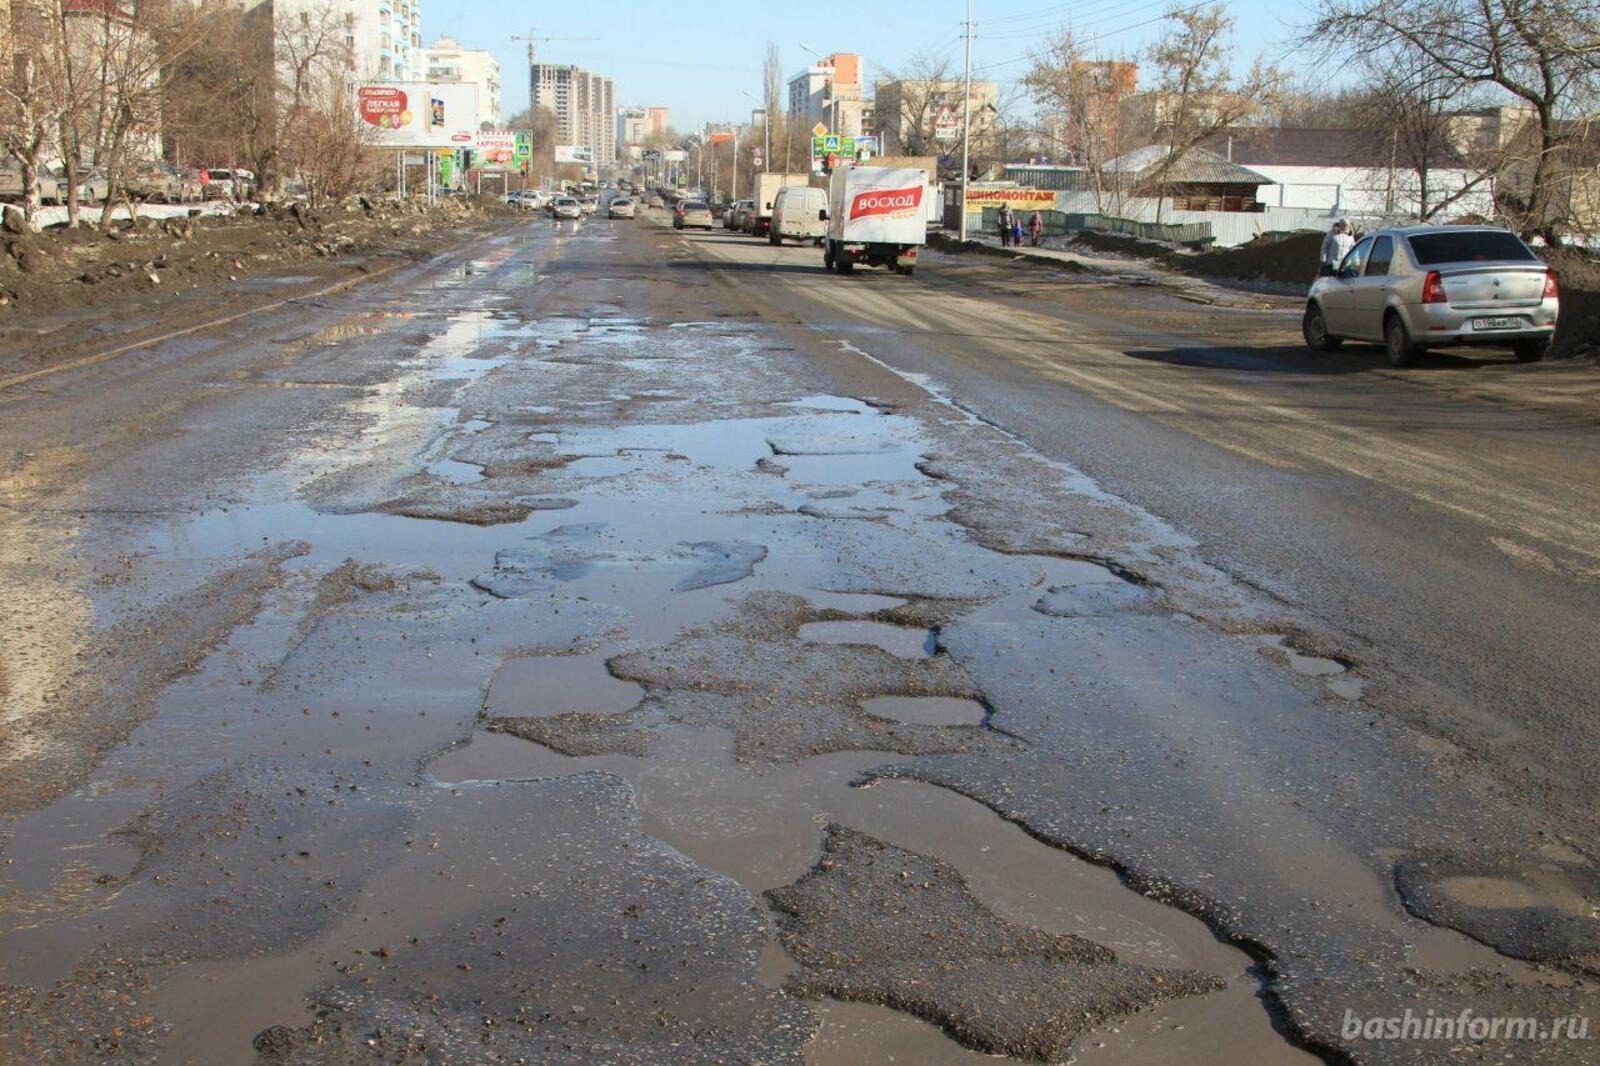 Какие дороги закрыты в башкирии. Плохие дороги. Некачественные дороги. Плохая дорога. Дороги Башкирии.